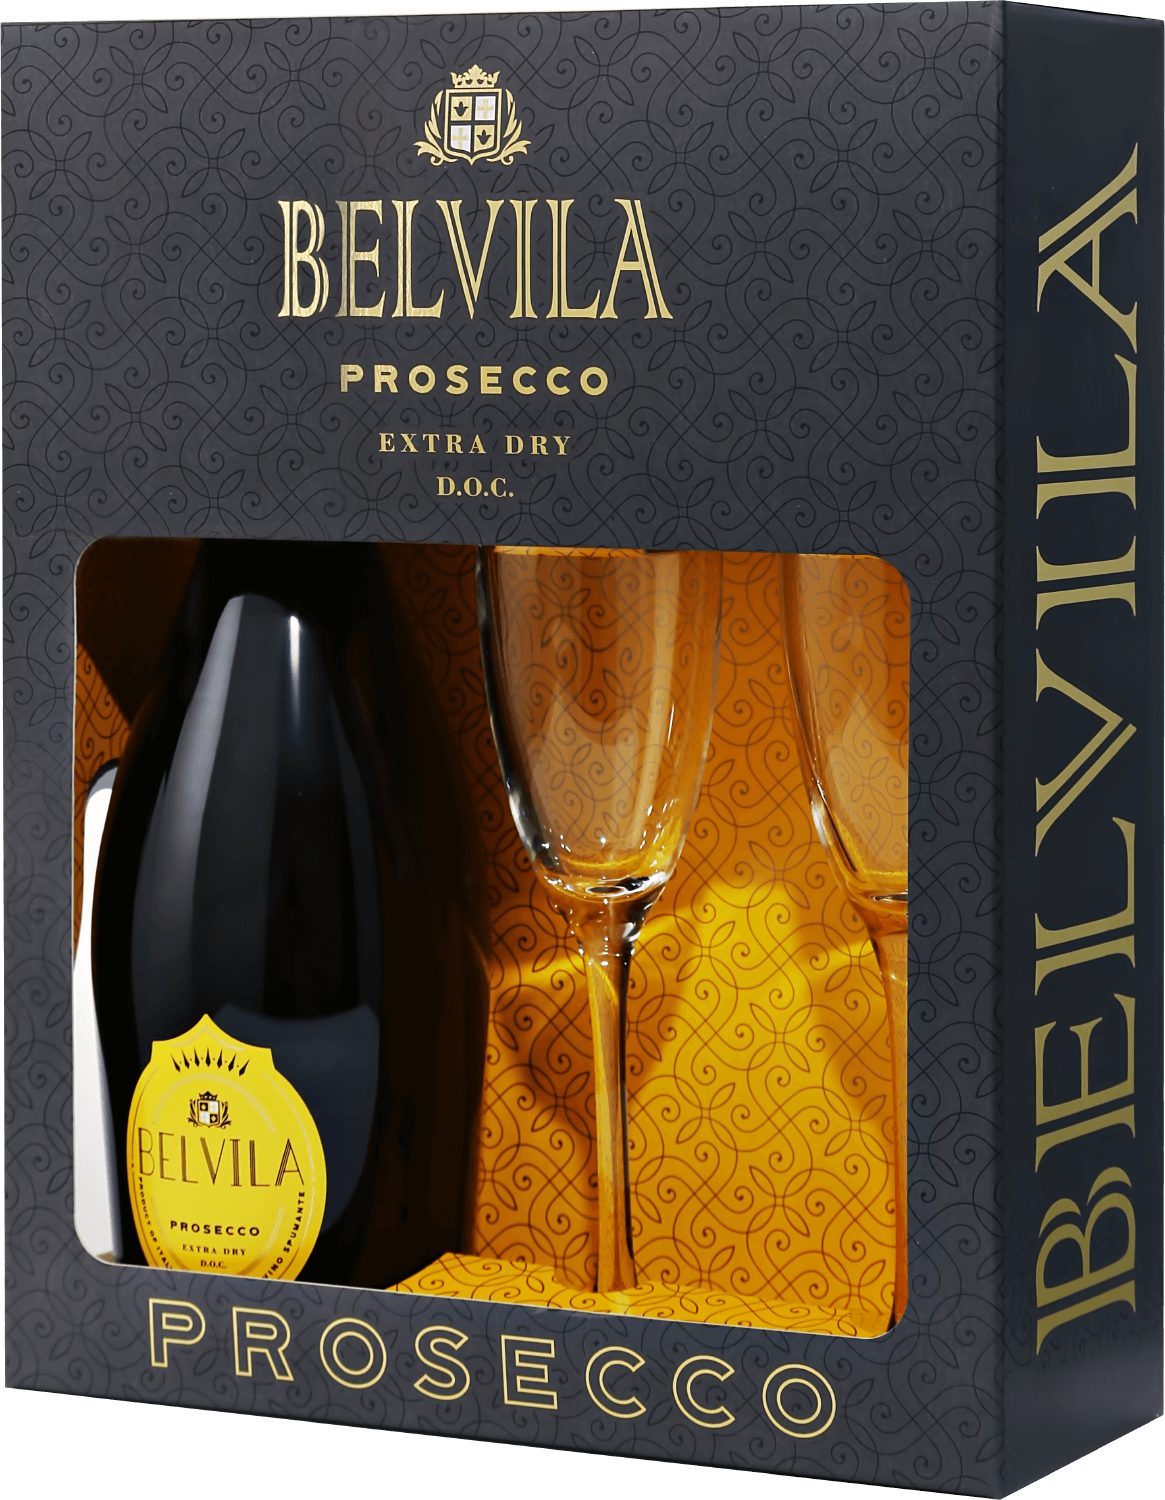 Belvila Prosecco DOC Spumante Extra Dry Villa Degli Olmi (gift box) la gioiosa prosecco doc gift box